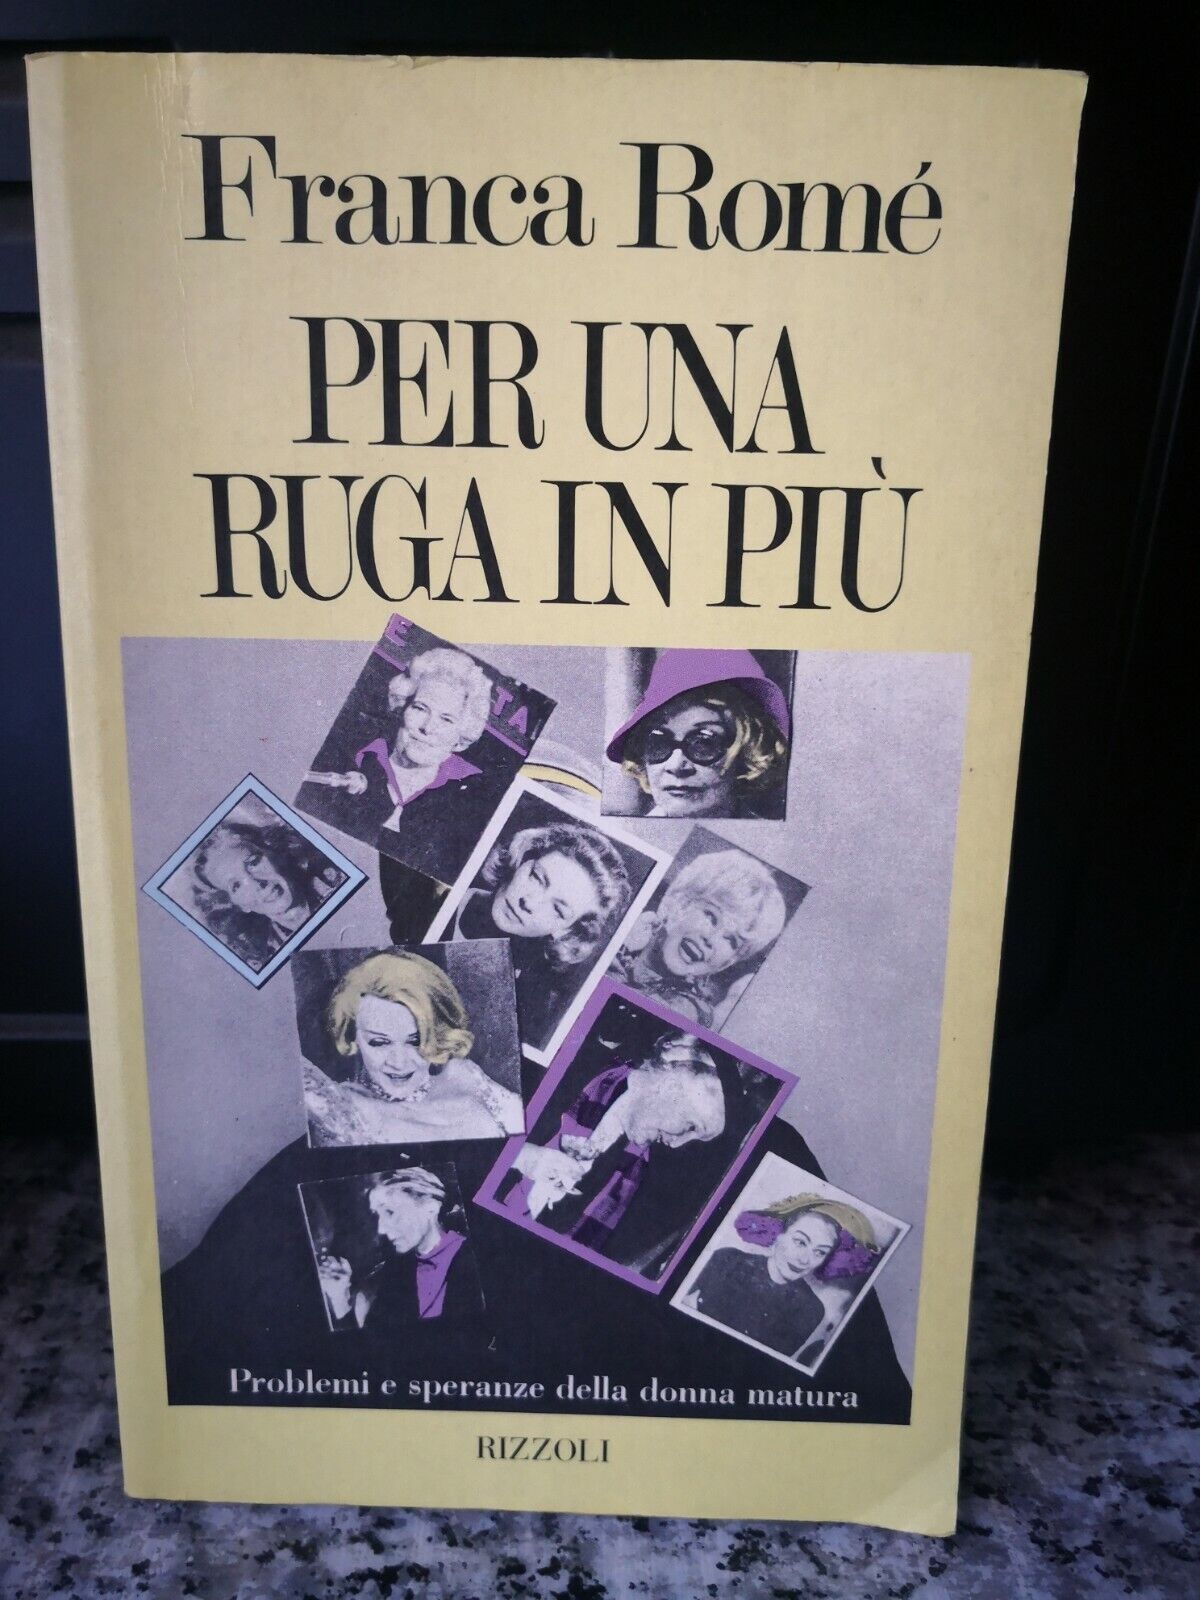  Per una ruga in pi?  di Franca Rom?,  1982,  Rizzoli -F